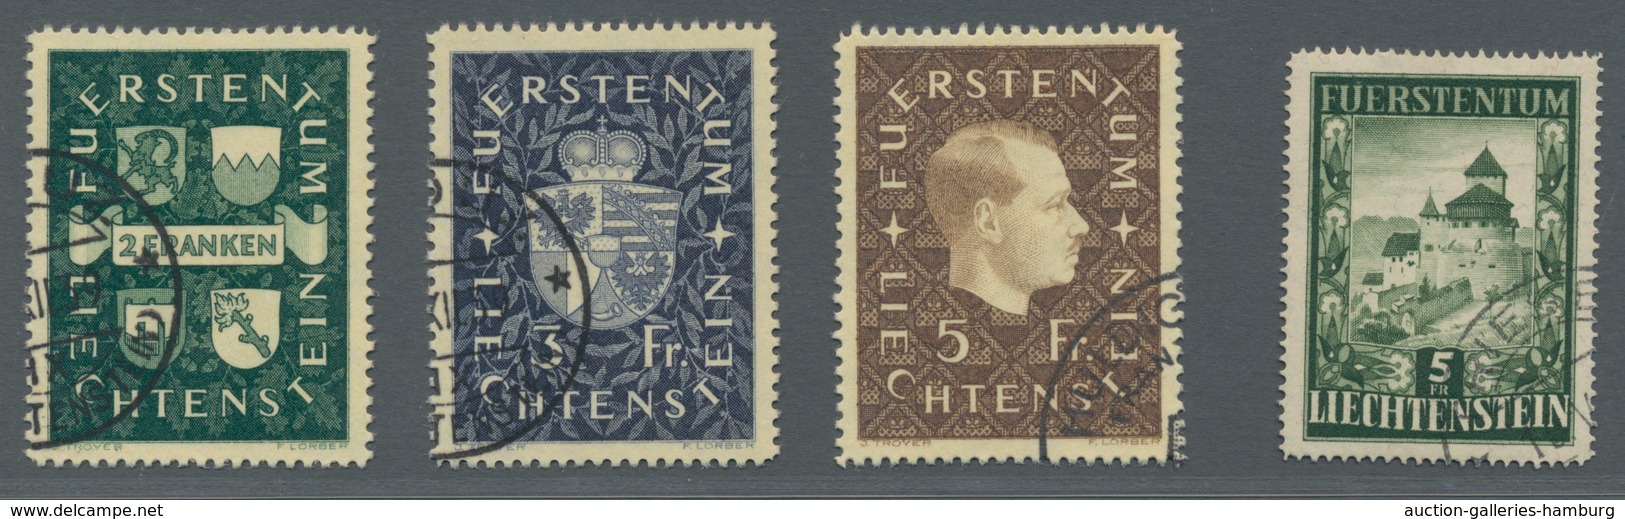 Liechtenstein: 1939 Und 1952 - Freimarkenausgaben Wappen / Franz Josef II. Bzw. Burg Vaduz Gestempel - Used Stamps